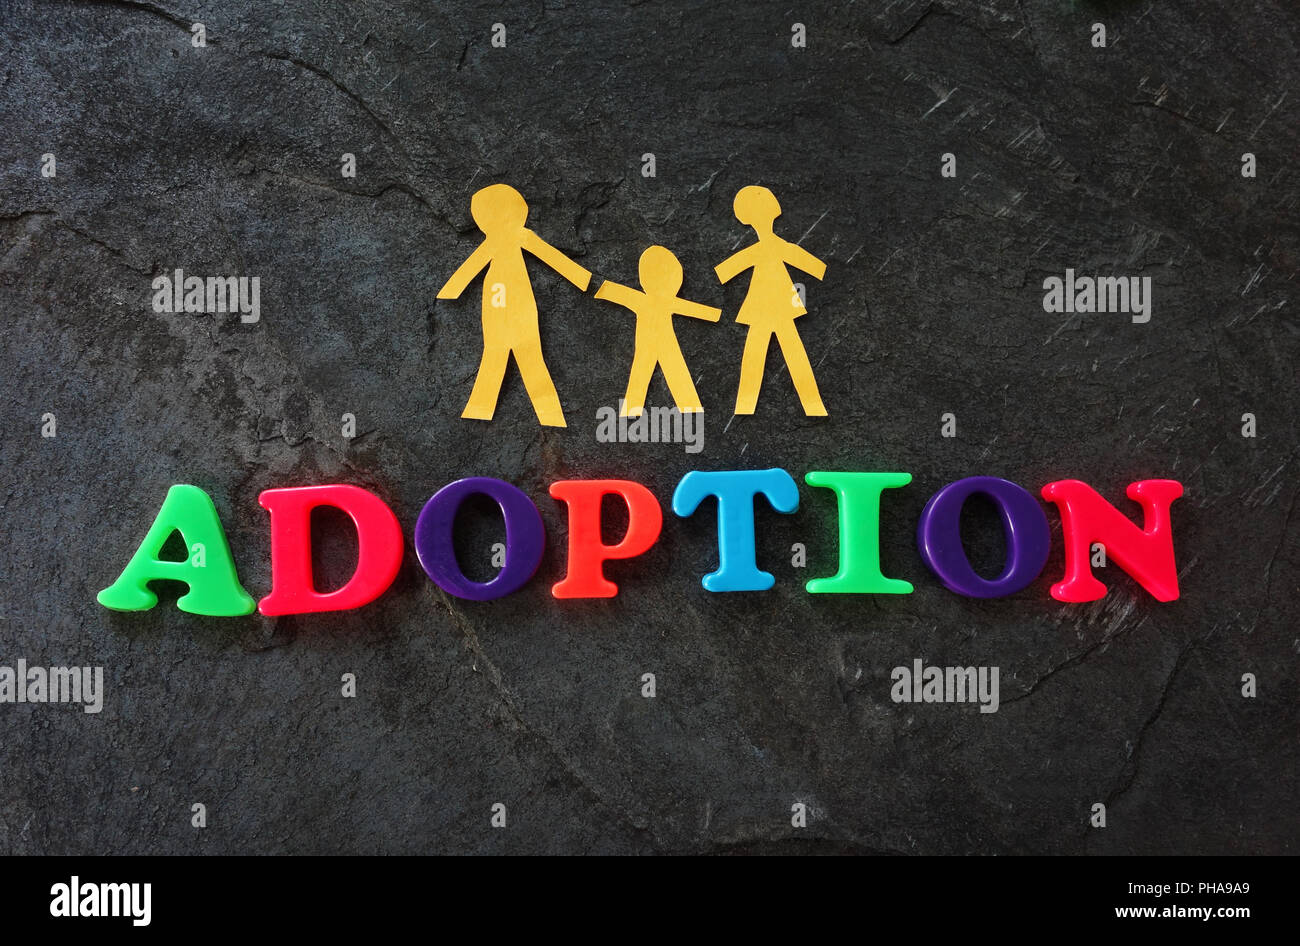 Family adoption concept Stock Photo